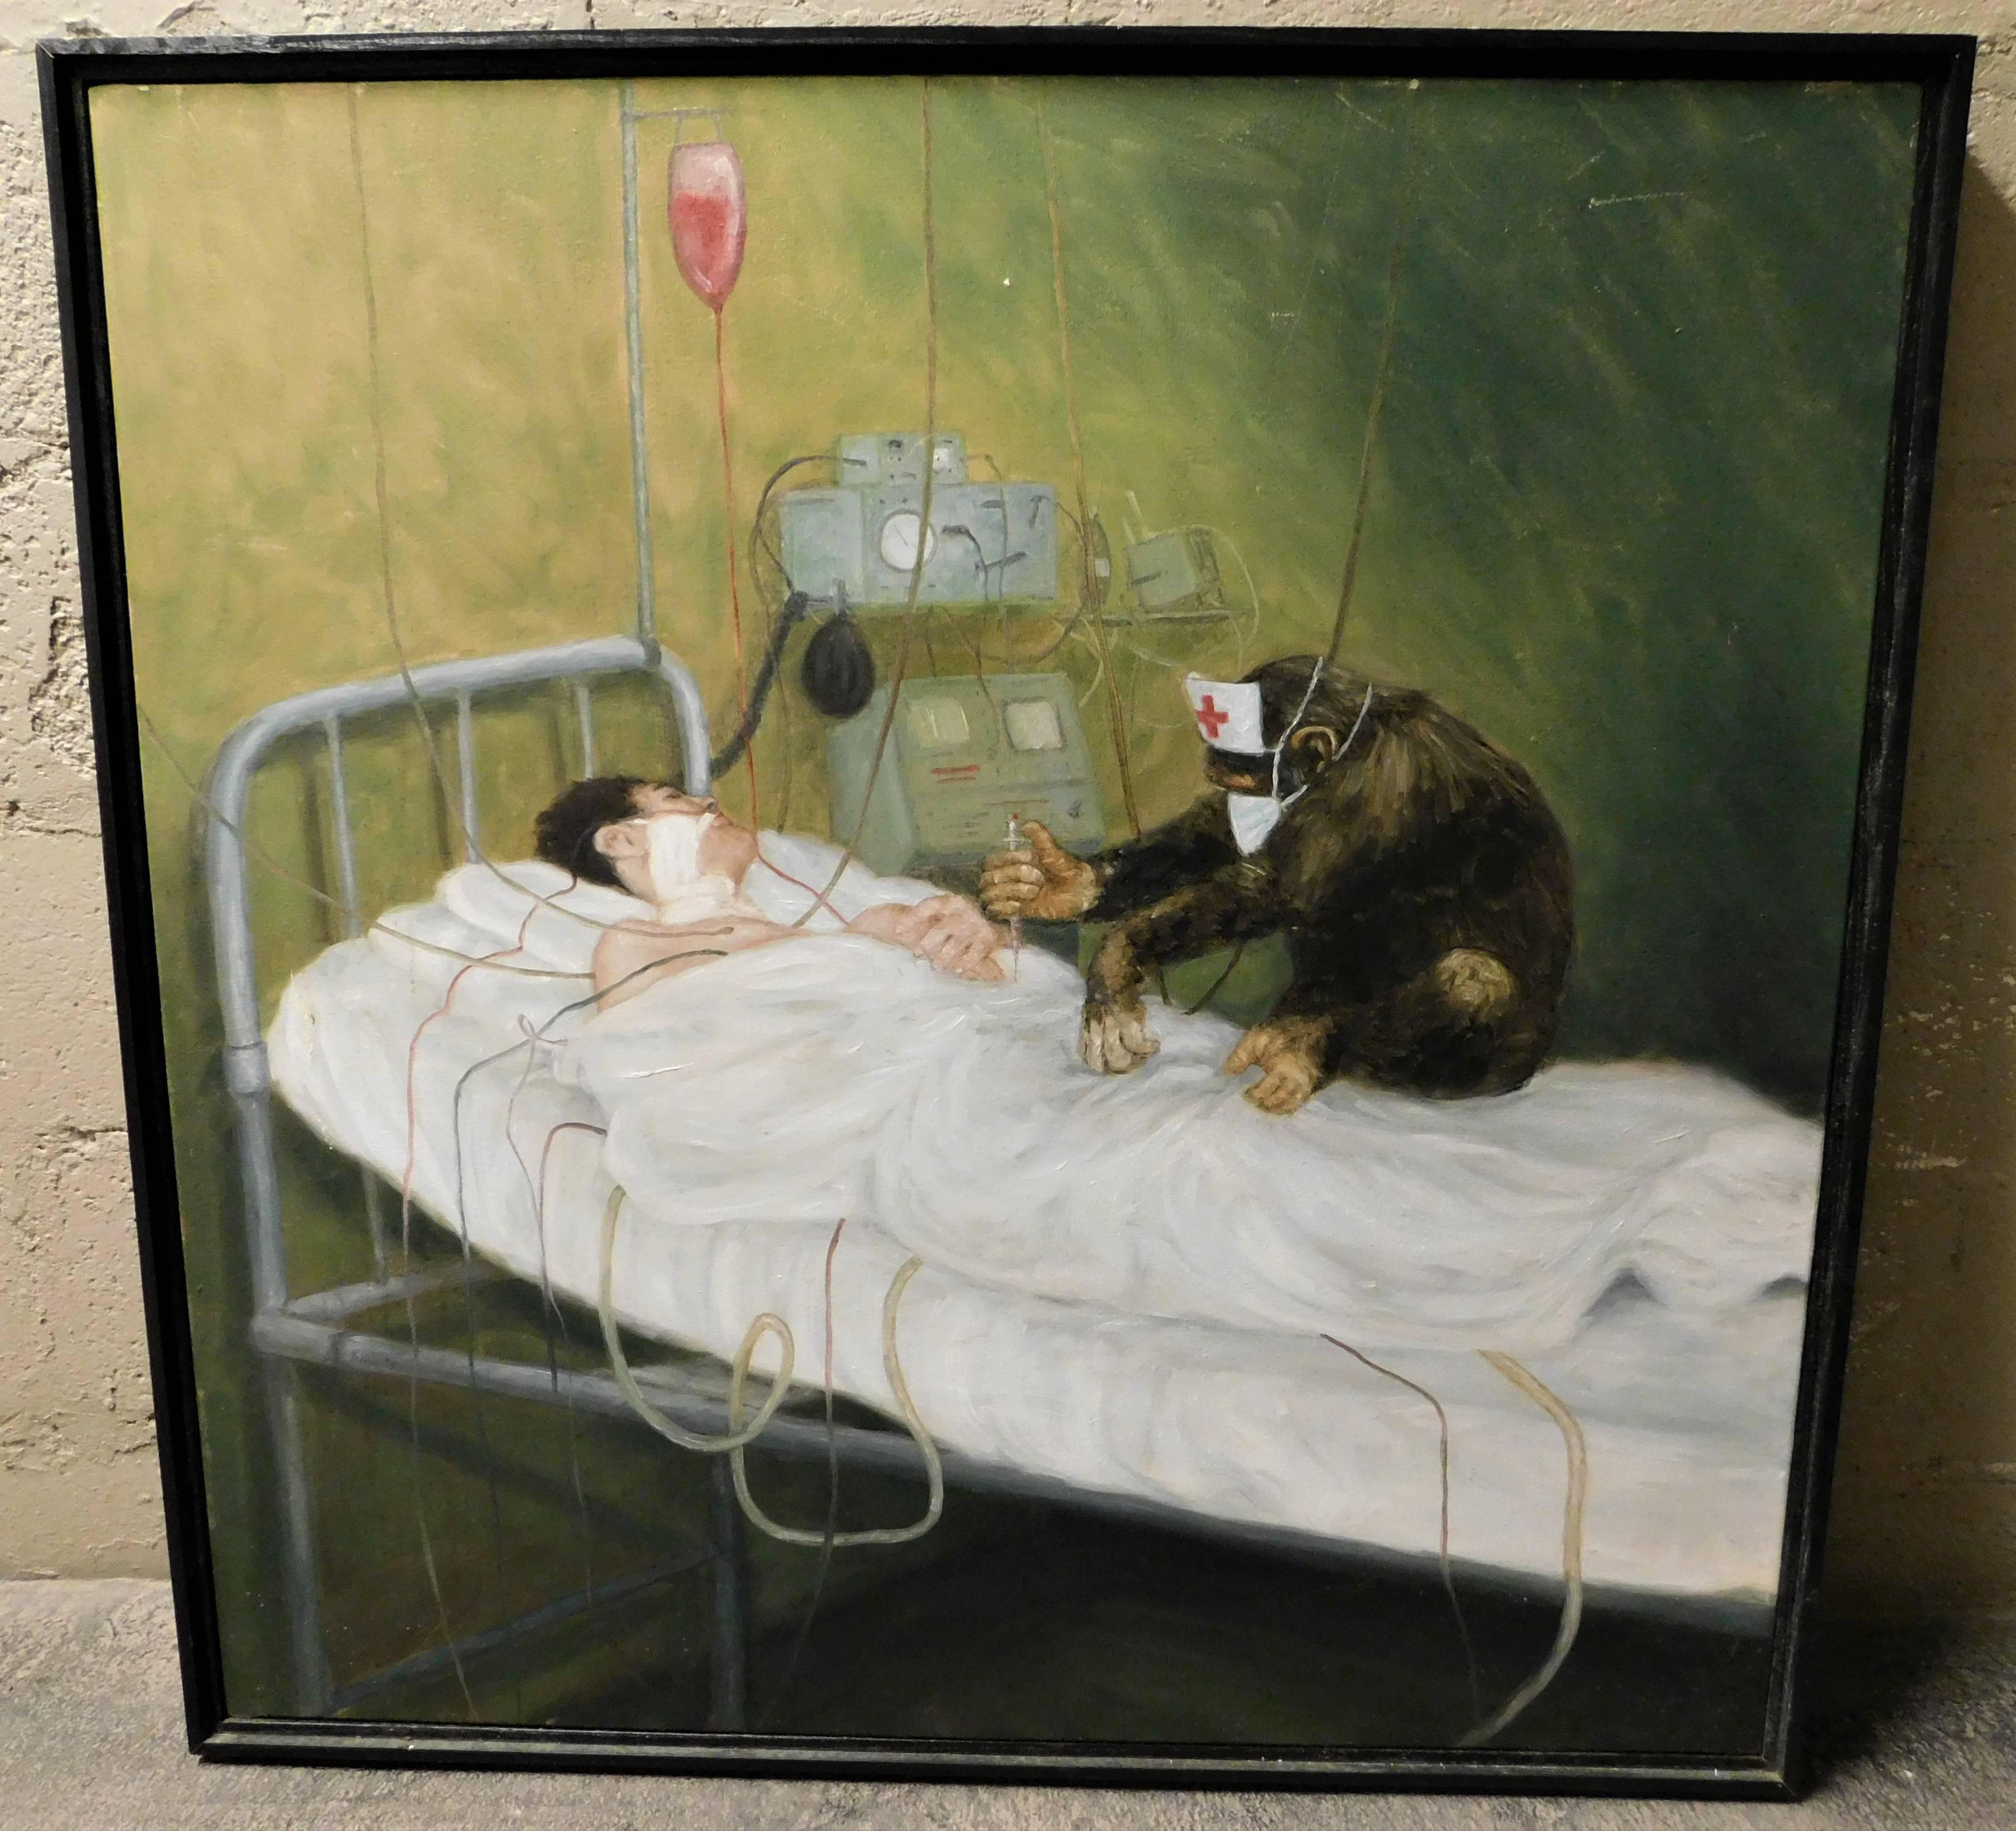 Peinture à l'huile originale sur toile des années 1950 représentant un singe infirmier soignant un patient dans un lit d'hôpital. La peinture est d'un artiste inconnu car elle n'est pas signée. Elle date des années 1950 et était peut-être une